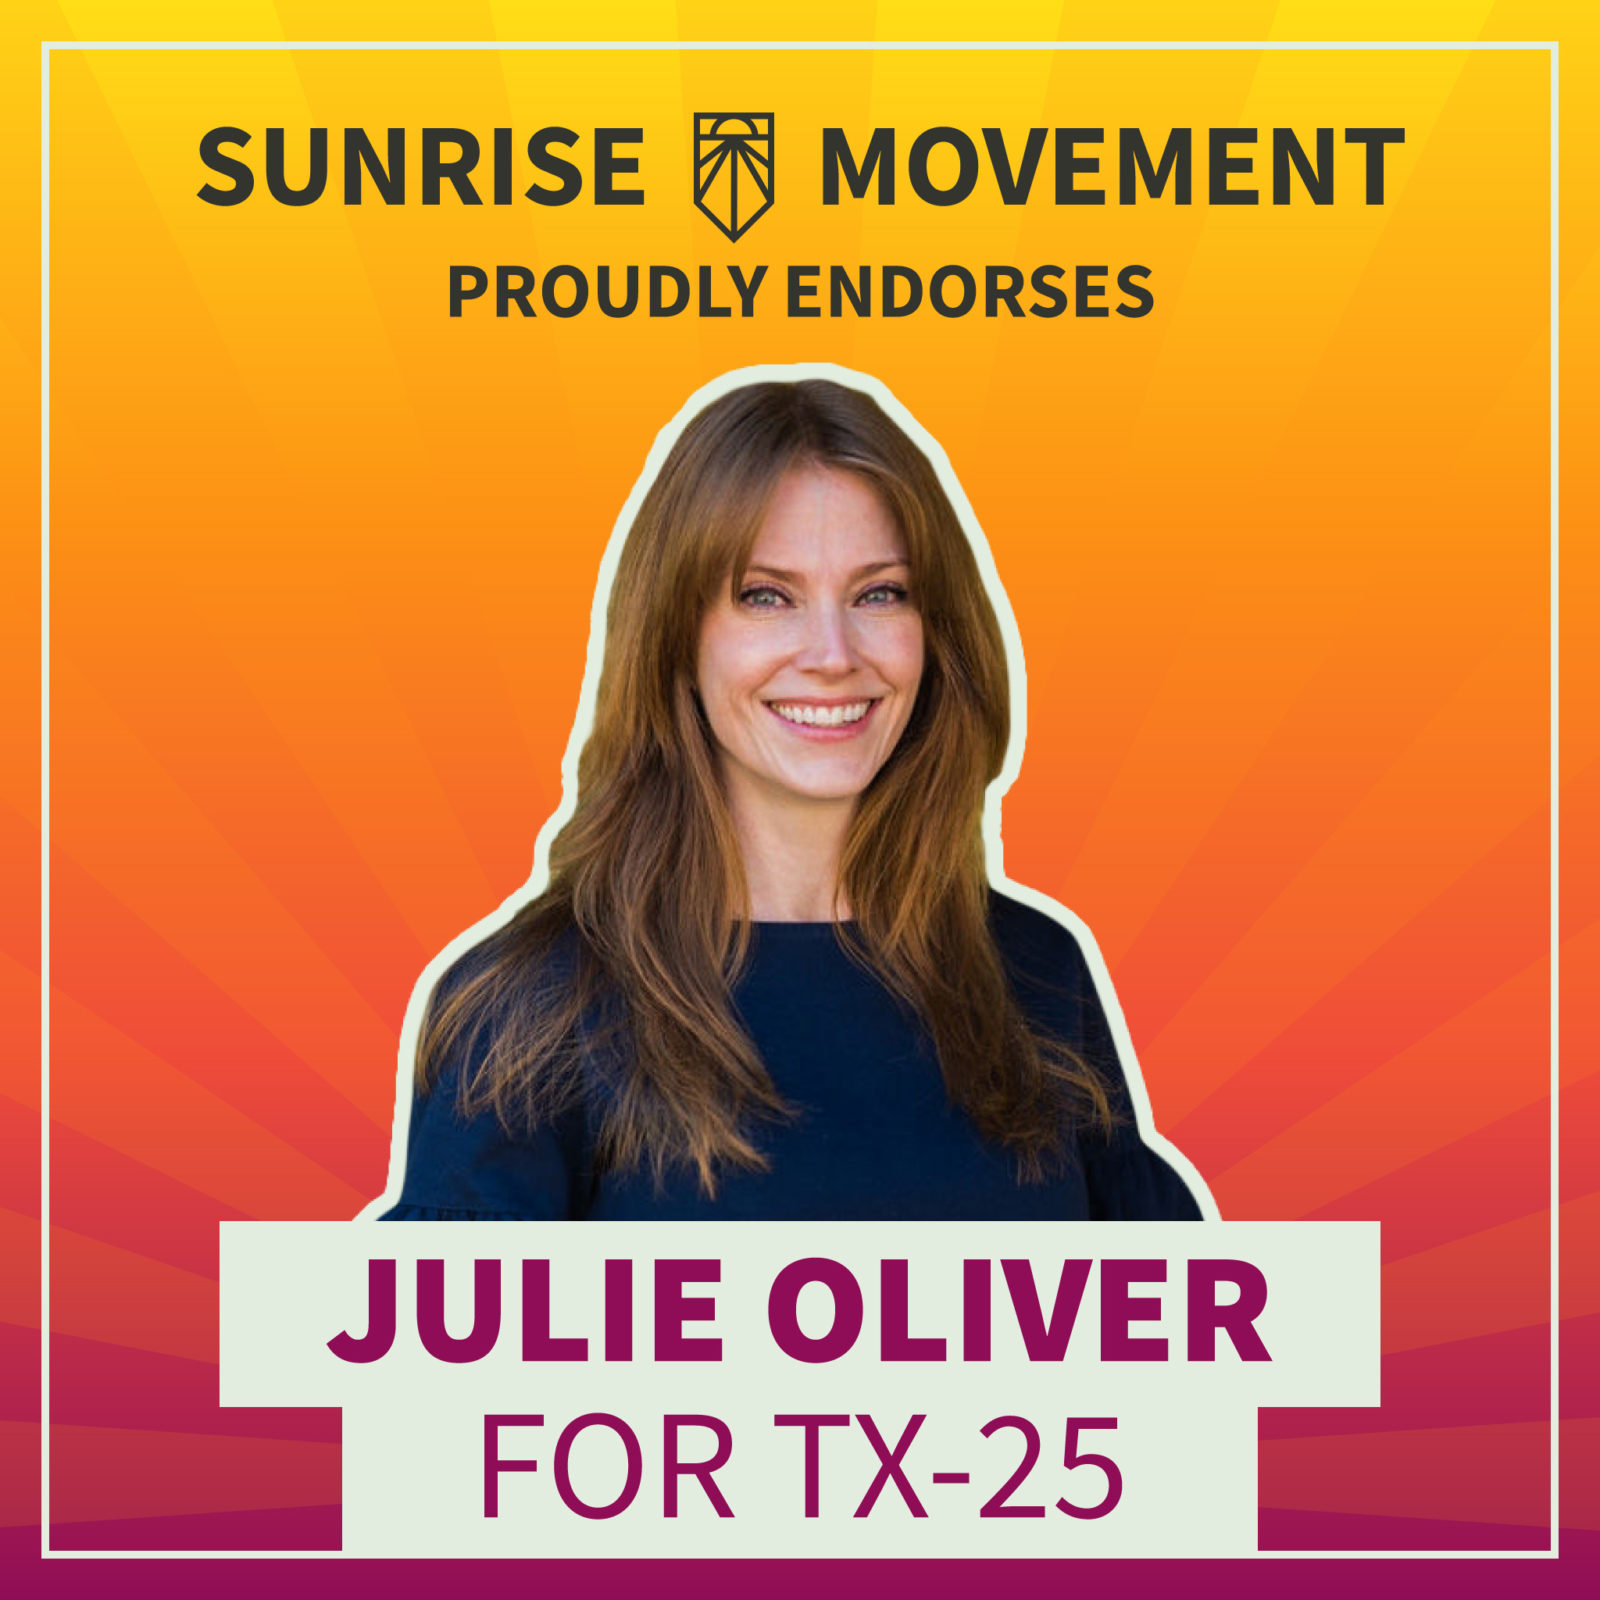 Фотография Джули Оливер с текстом: «Движение восхода солнца» с гордостью поддерживает Джули Оливер для участия в TX-25.